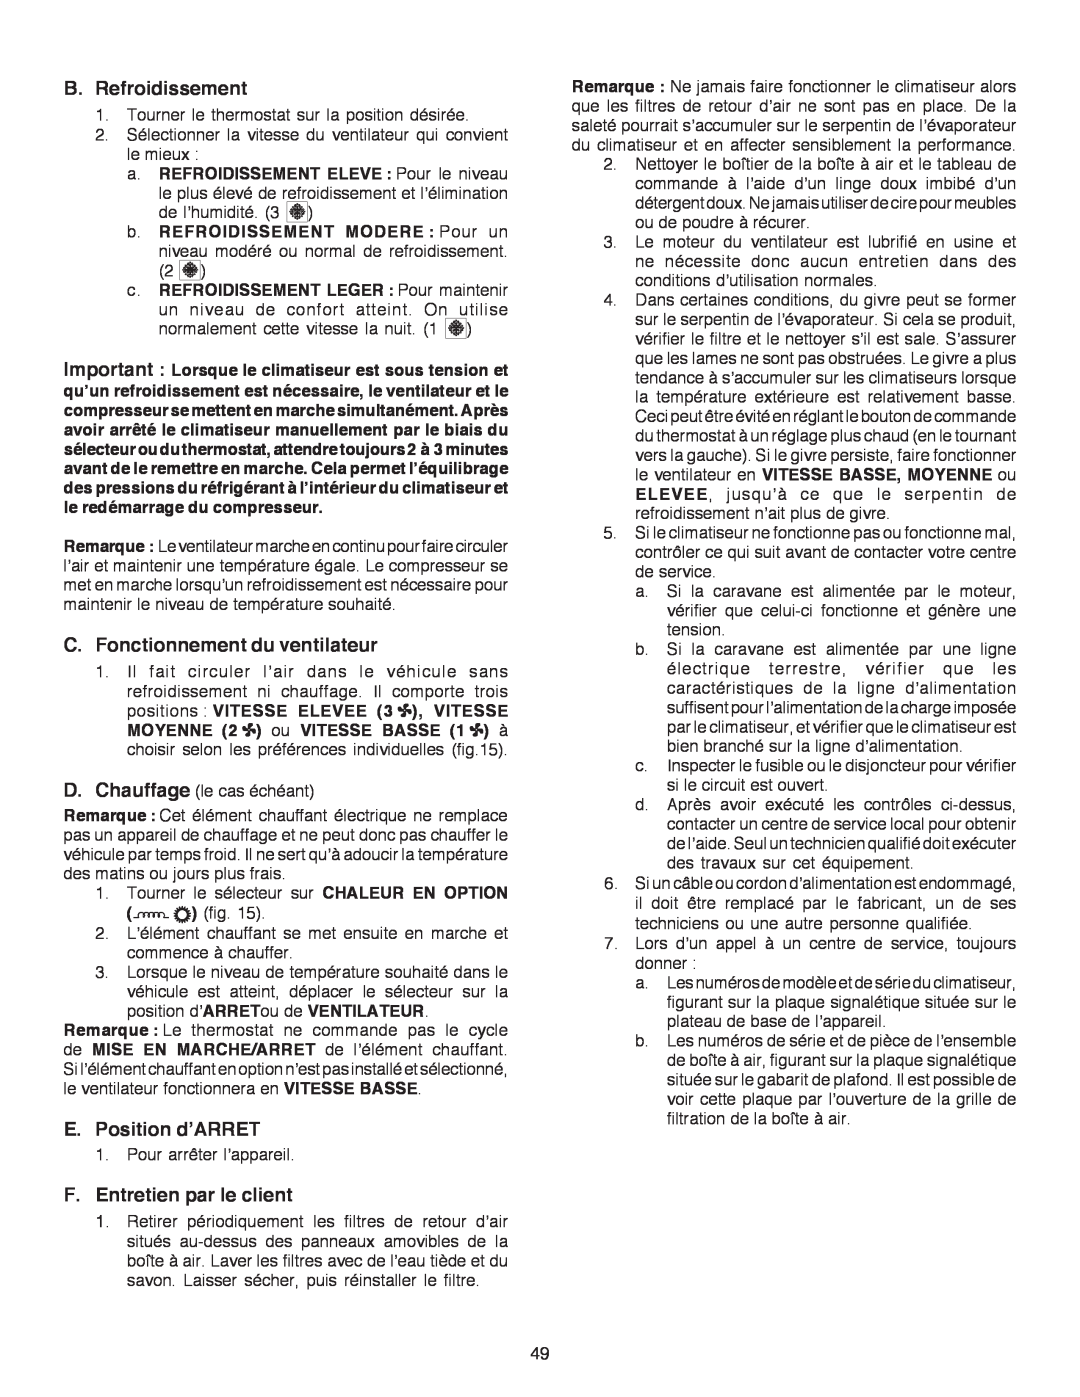 Dometic B3200 manual B.Refroidissement, C.Fonctionnement du ventilateur, E.Position d’ARRET, F.Entretien par le client 